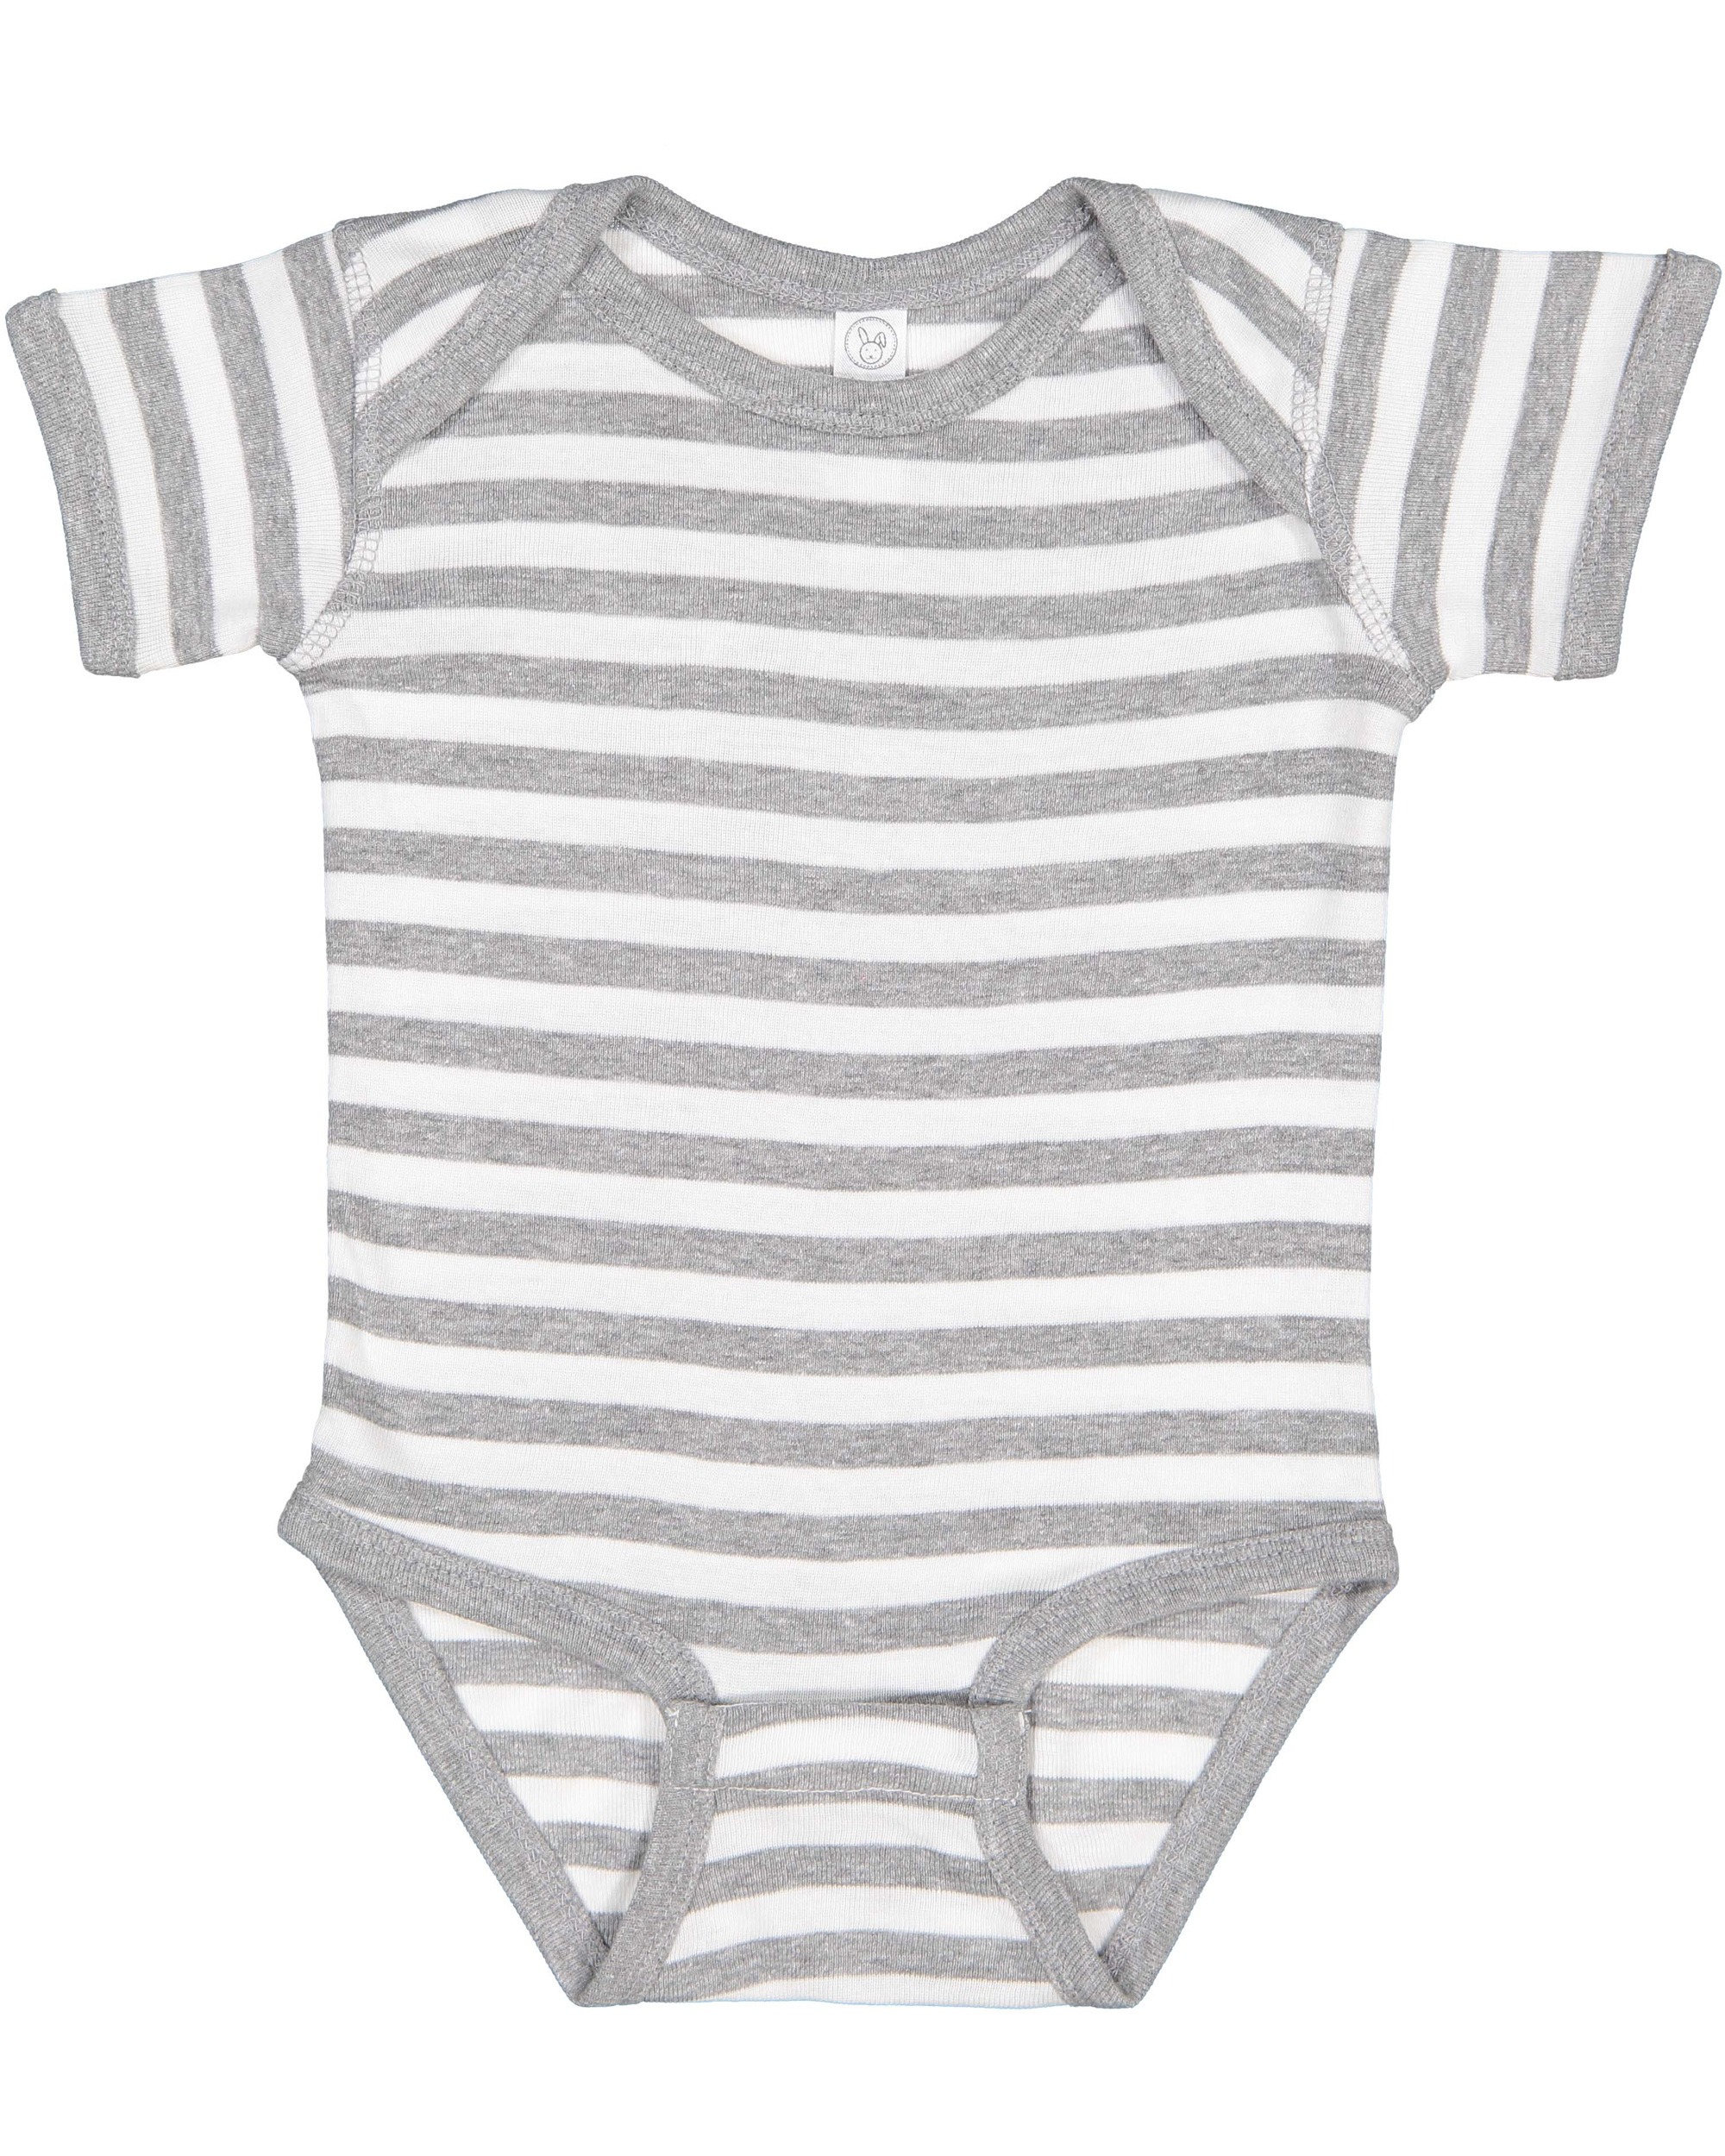 Rabbit Skins® 4400 Infant Baby Rib Bodysuit